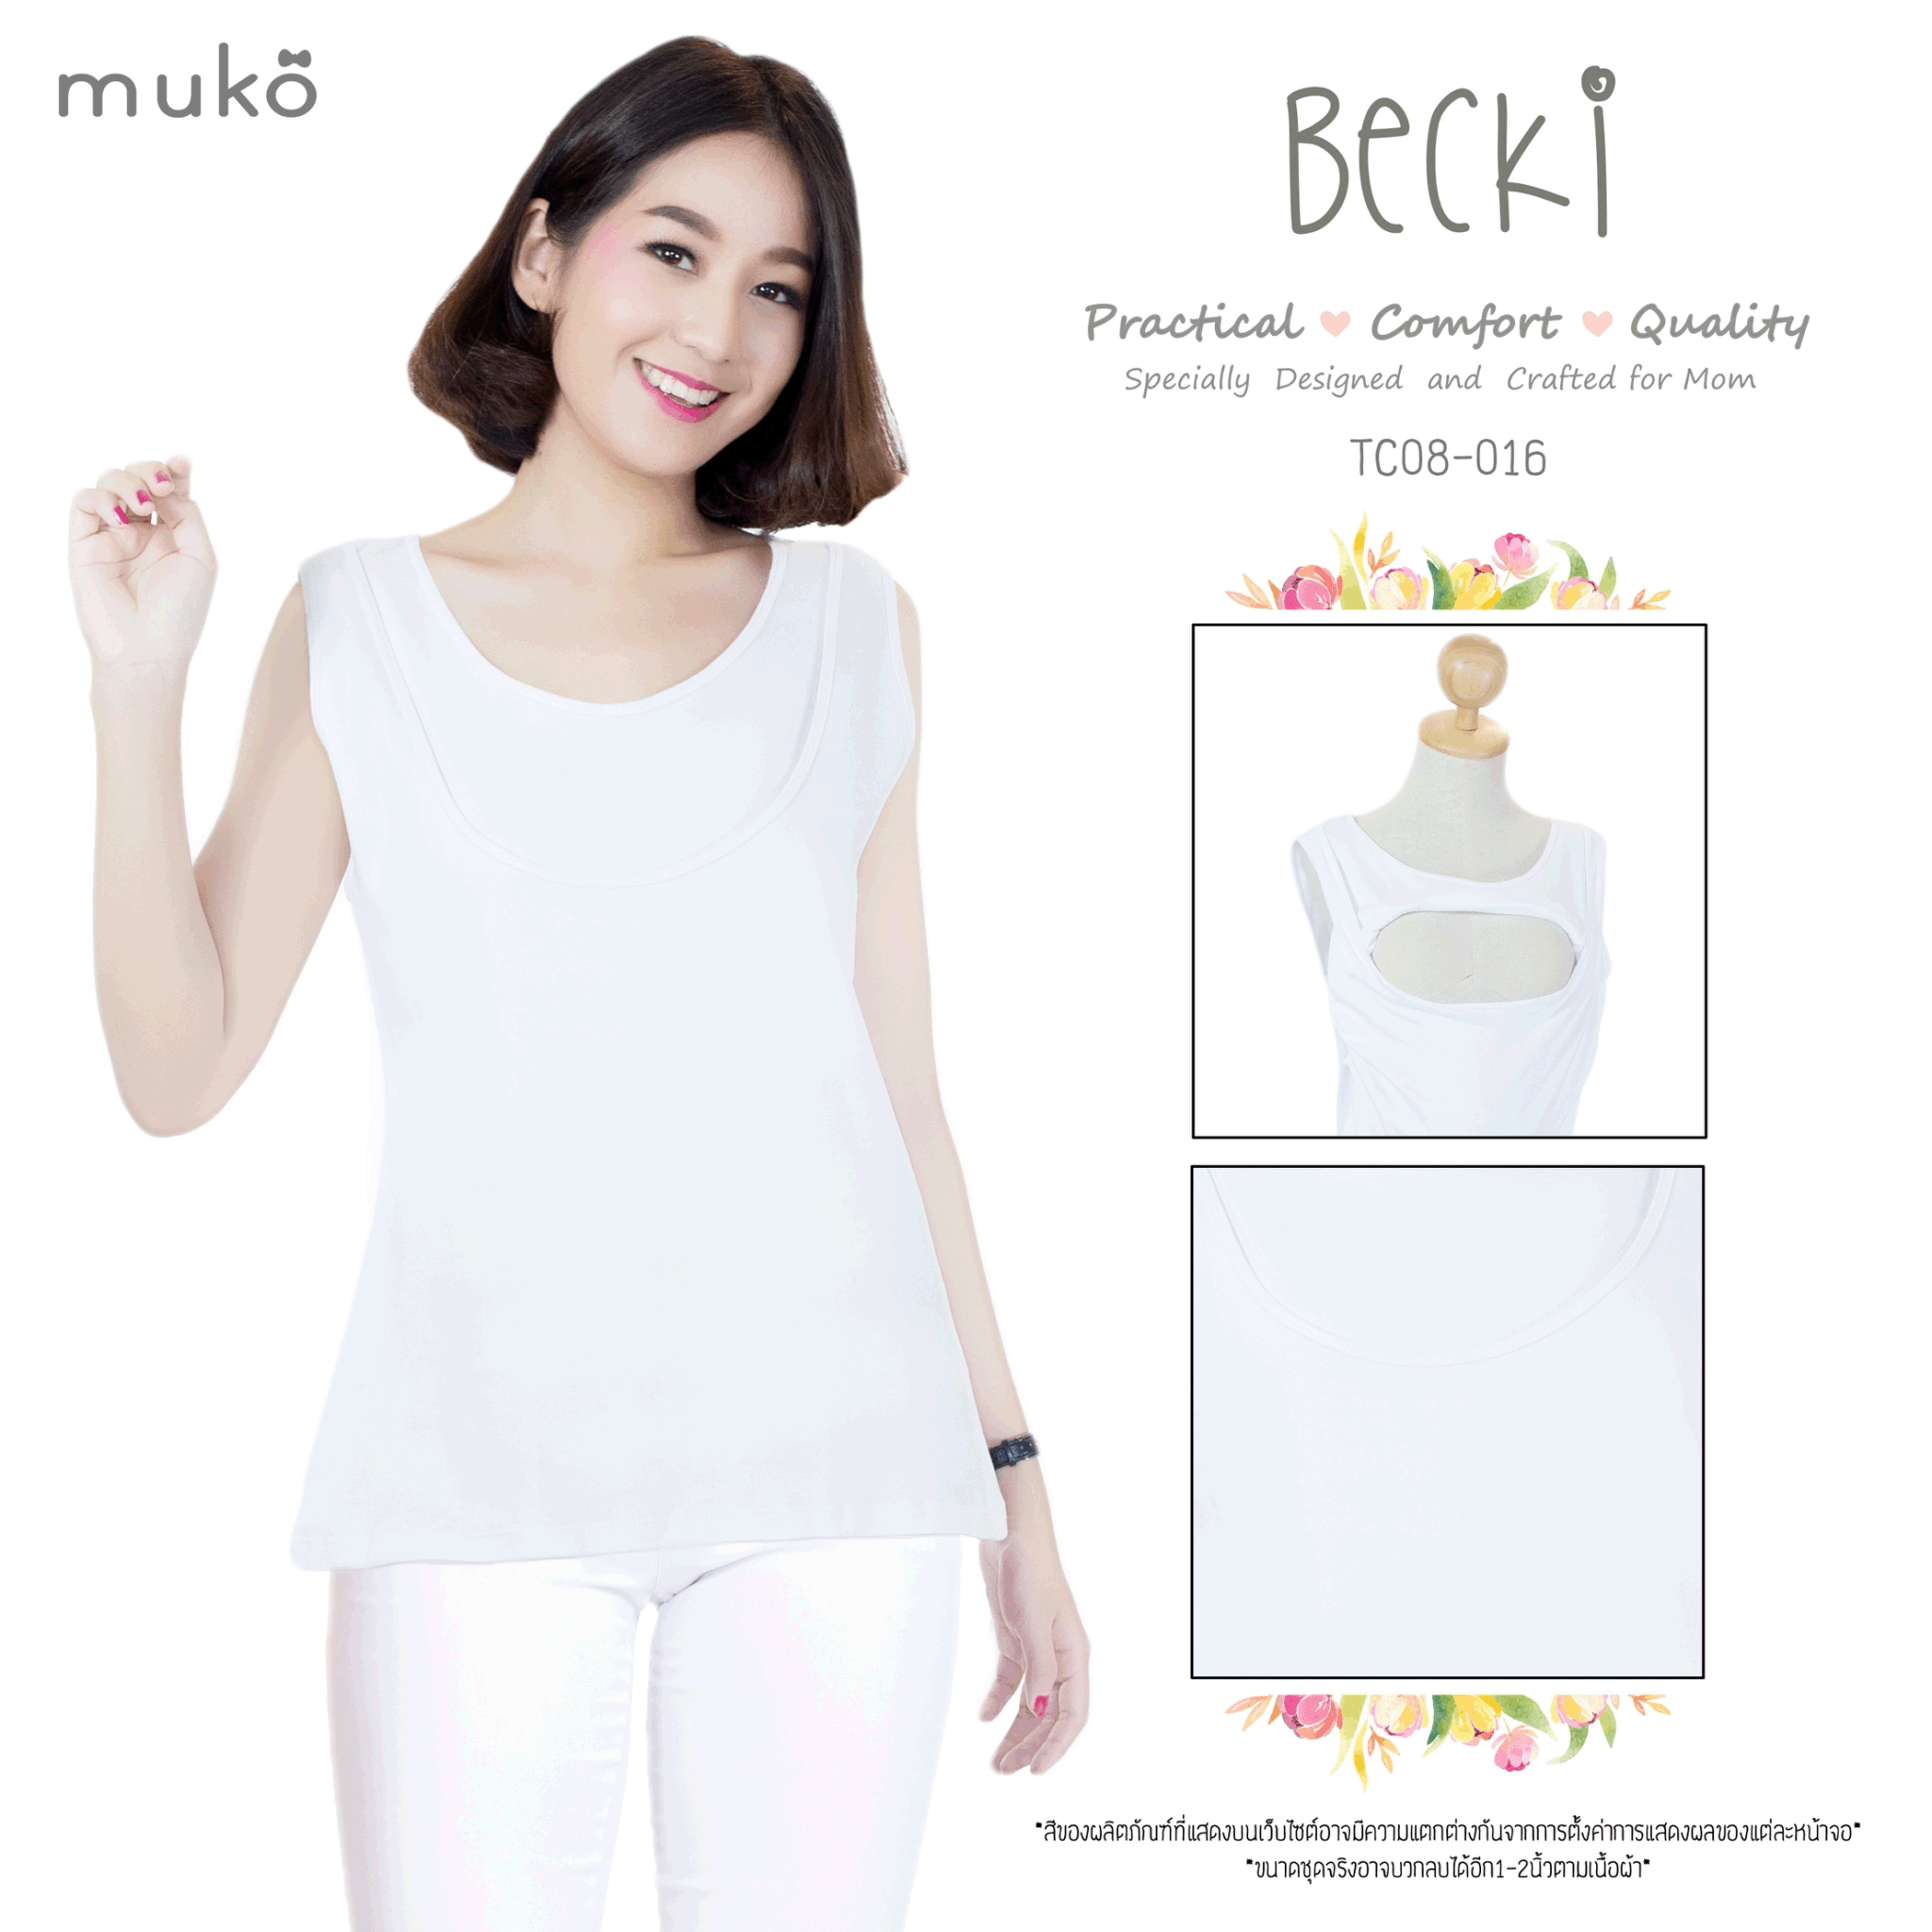 Muko Becki เสื้อเปิดให้นม ชุดคลุมท้อง TC08-016M สีขาว